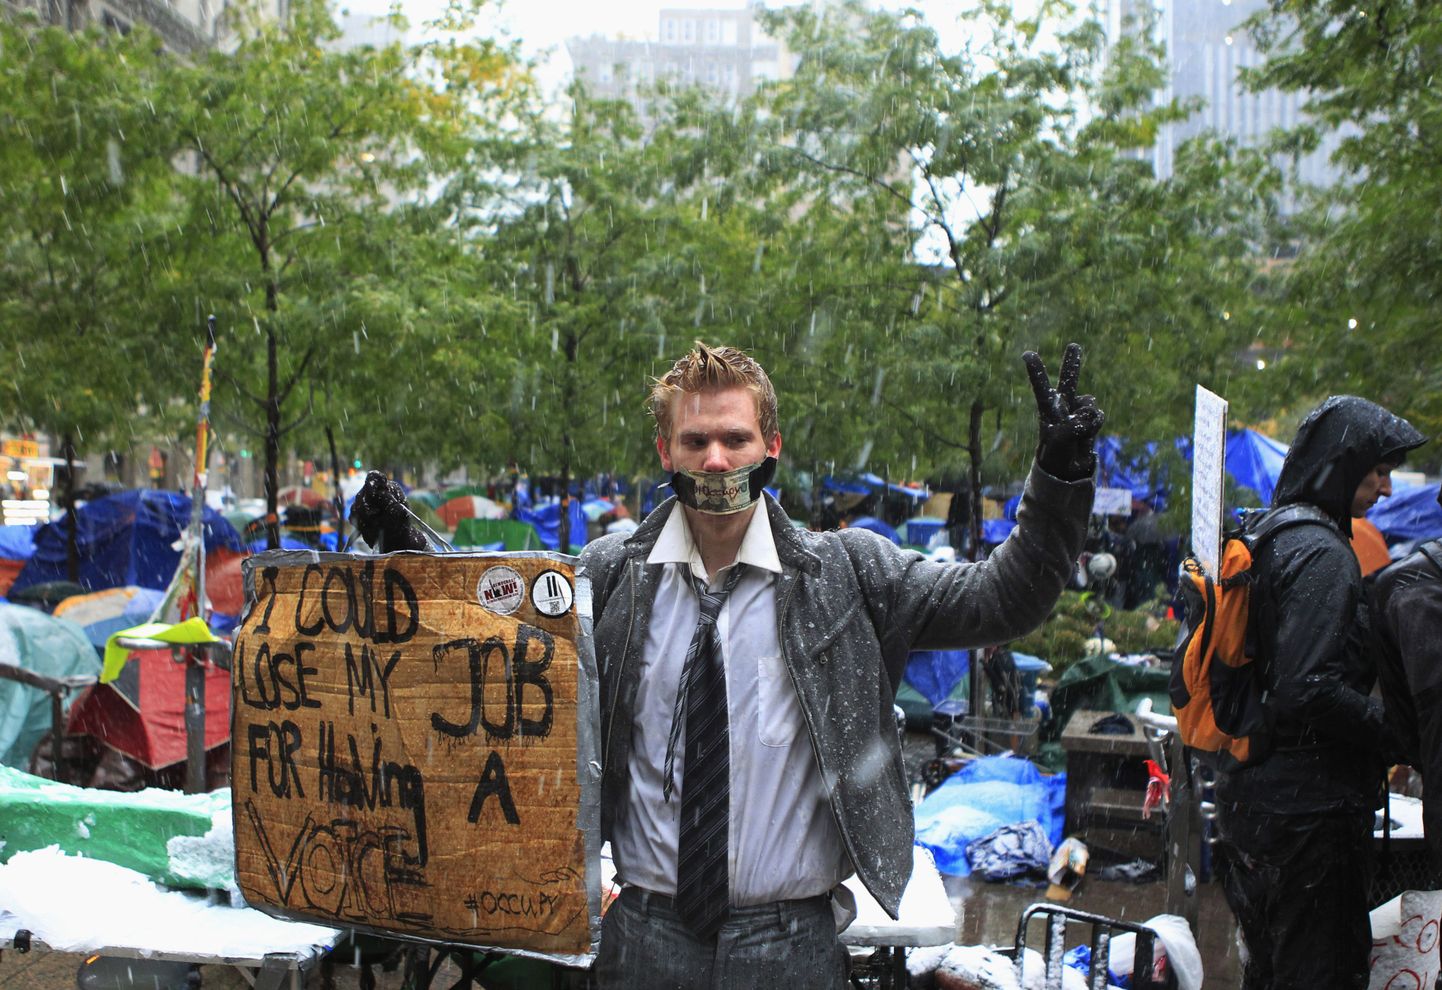 Liikumise Occupy Wall Street raames toimuv meeleavaldus New Yorgis Zuccotti pargis.